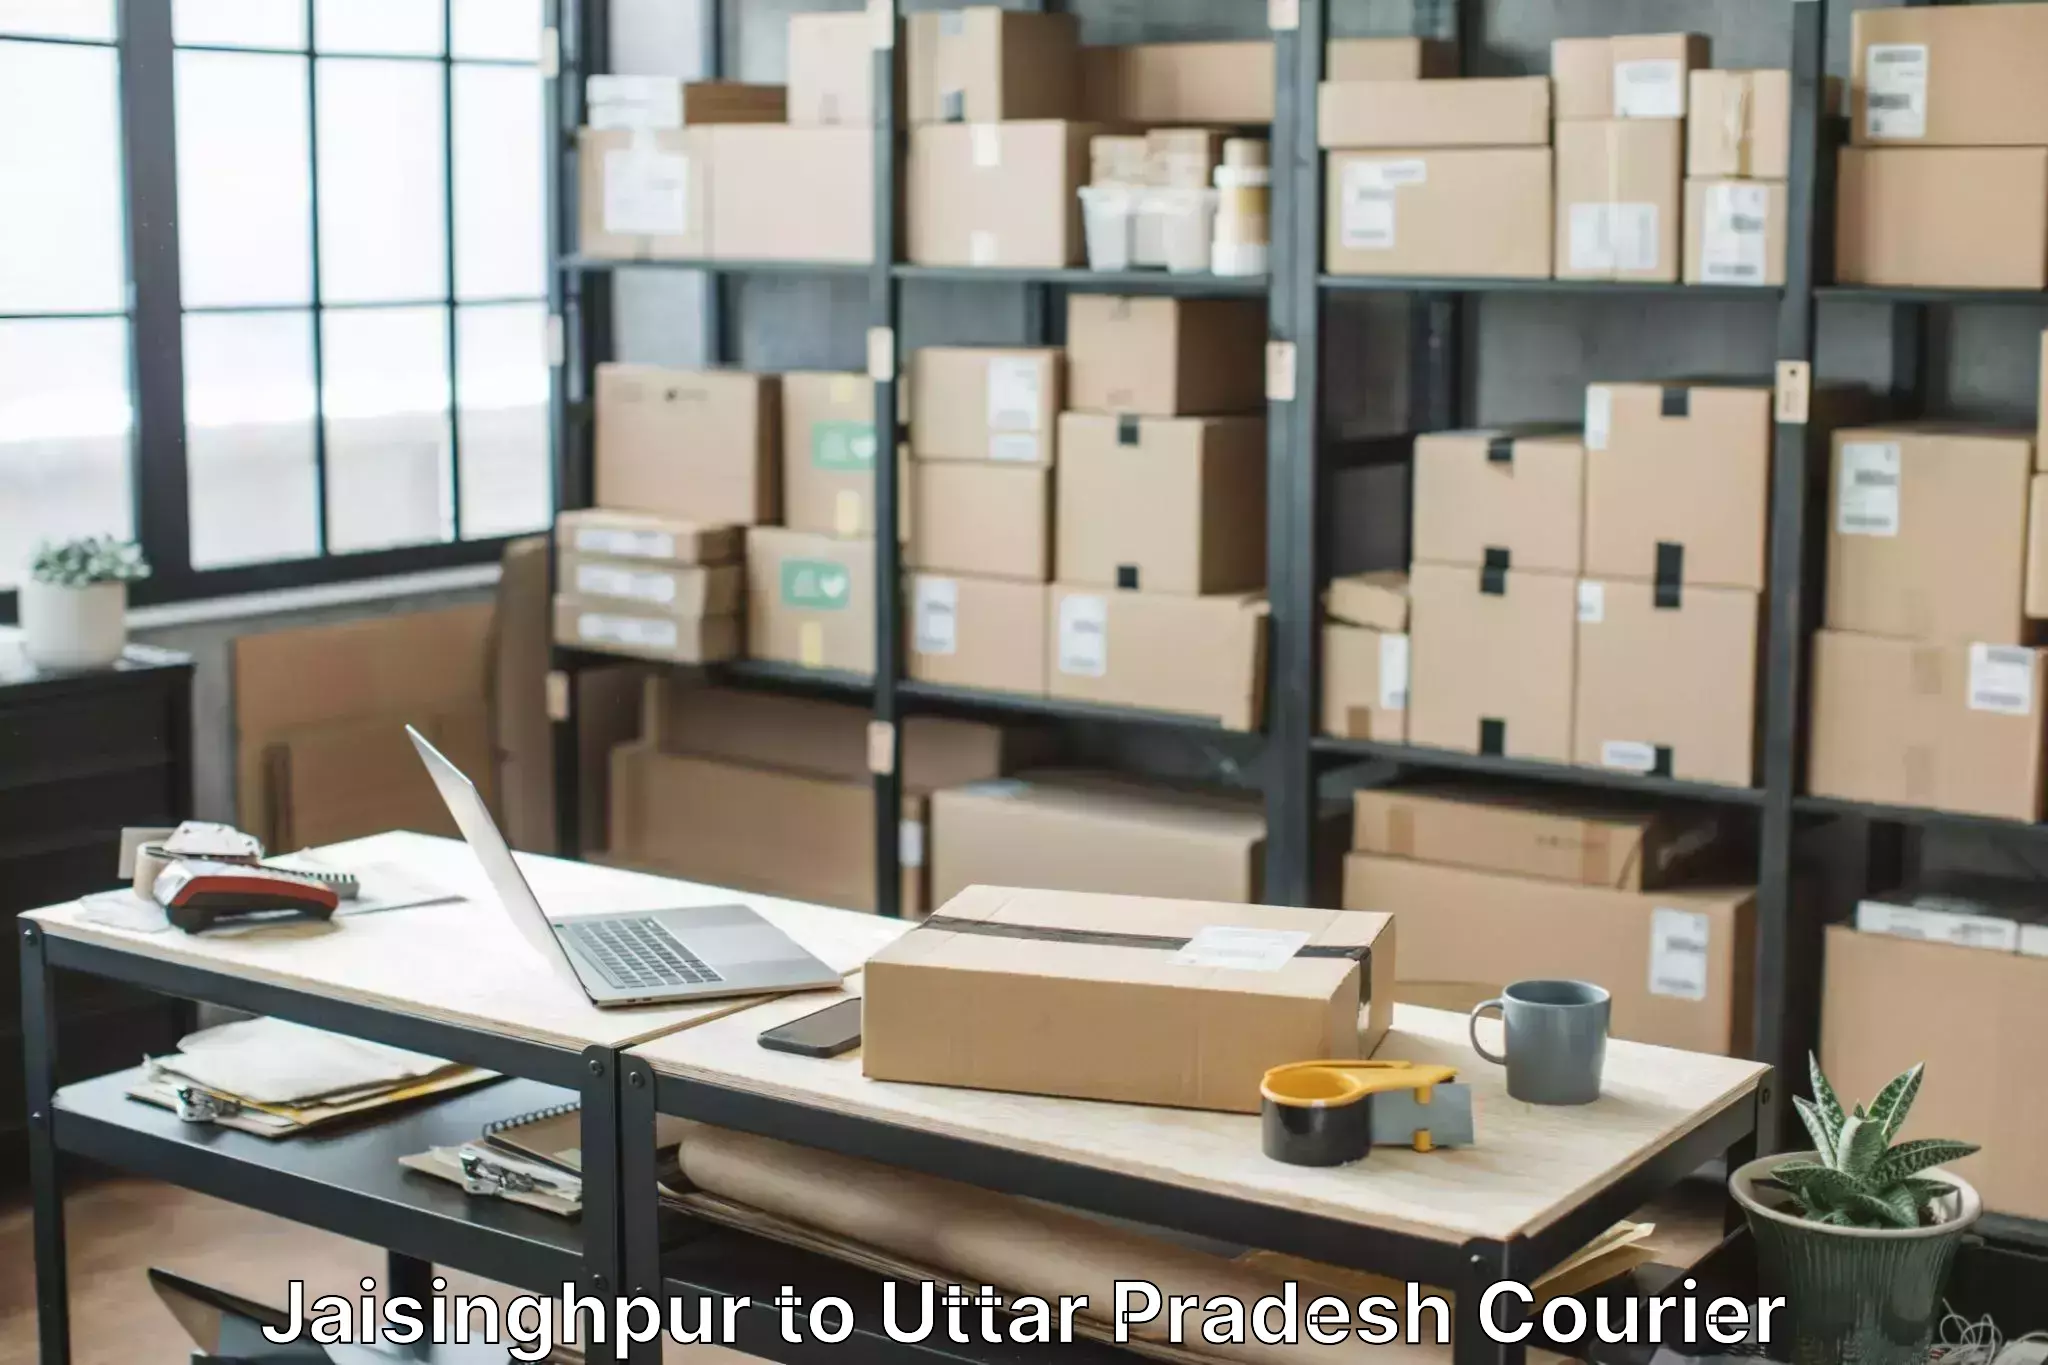 Furniture moving assistance Jaisinghpur to Itava